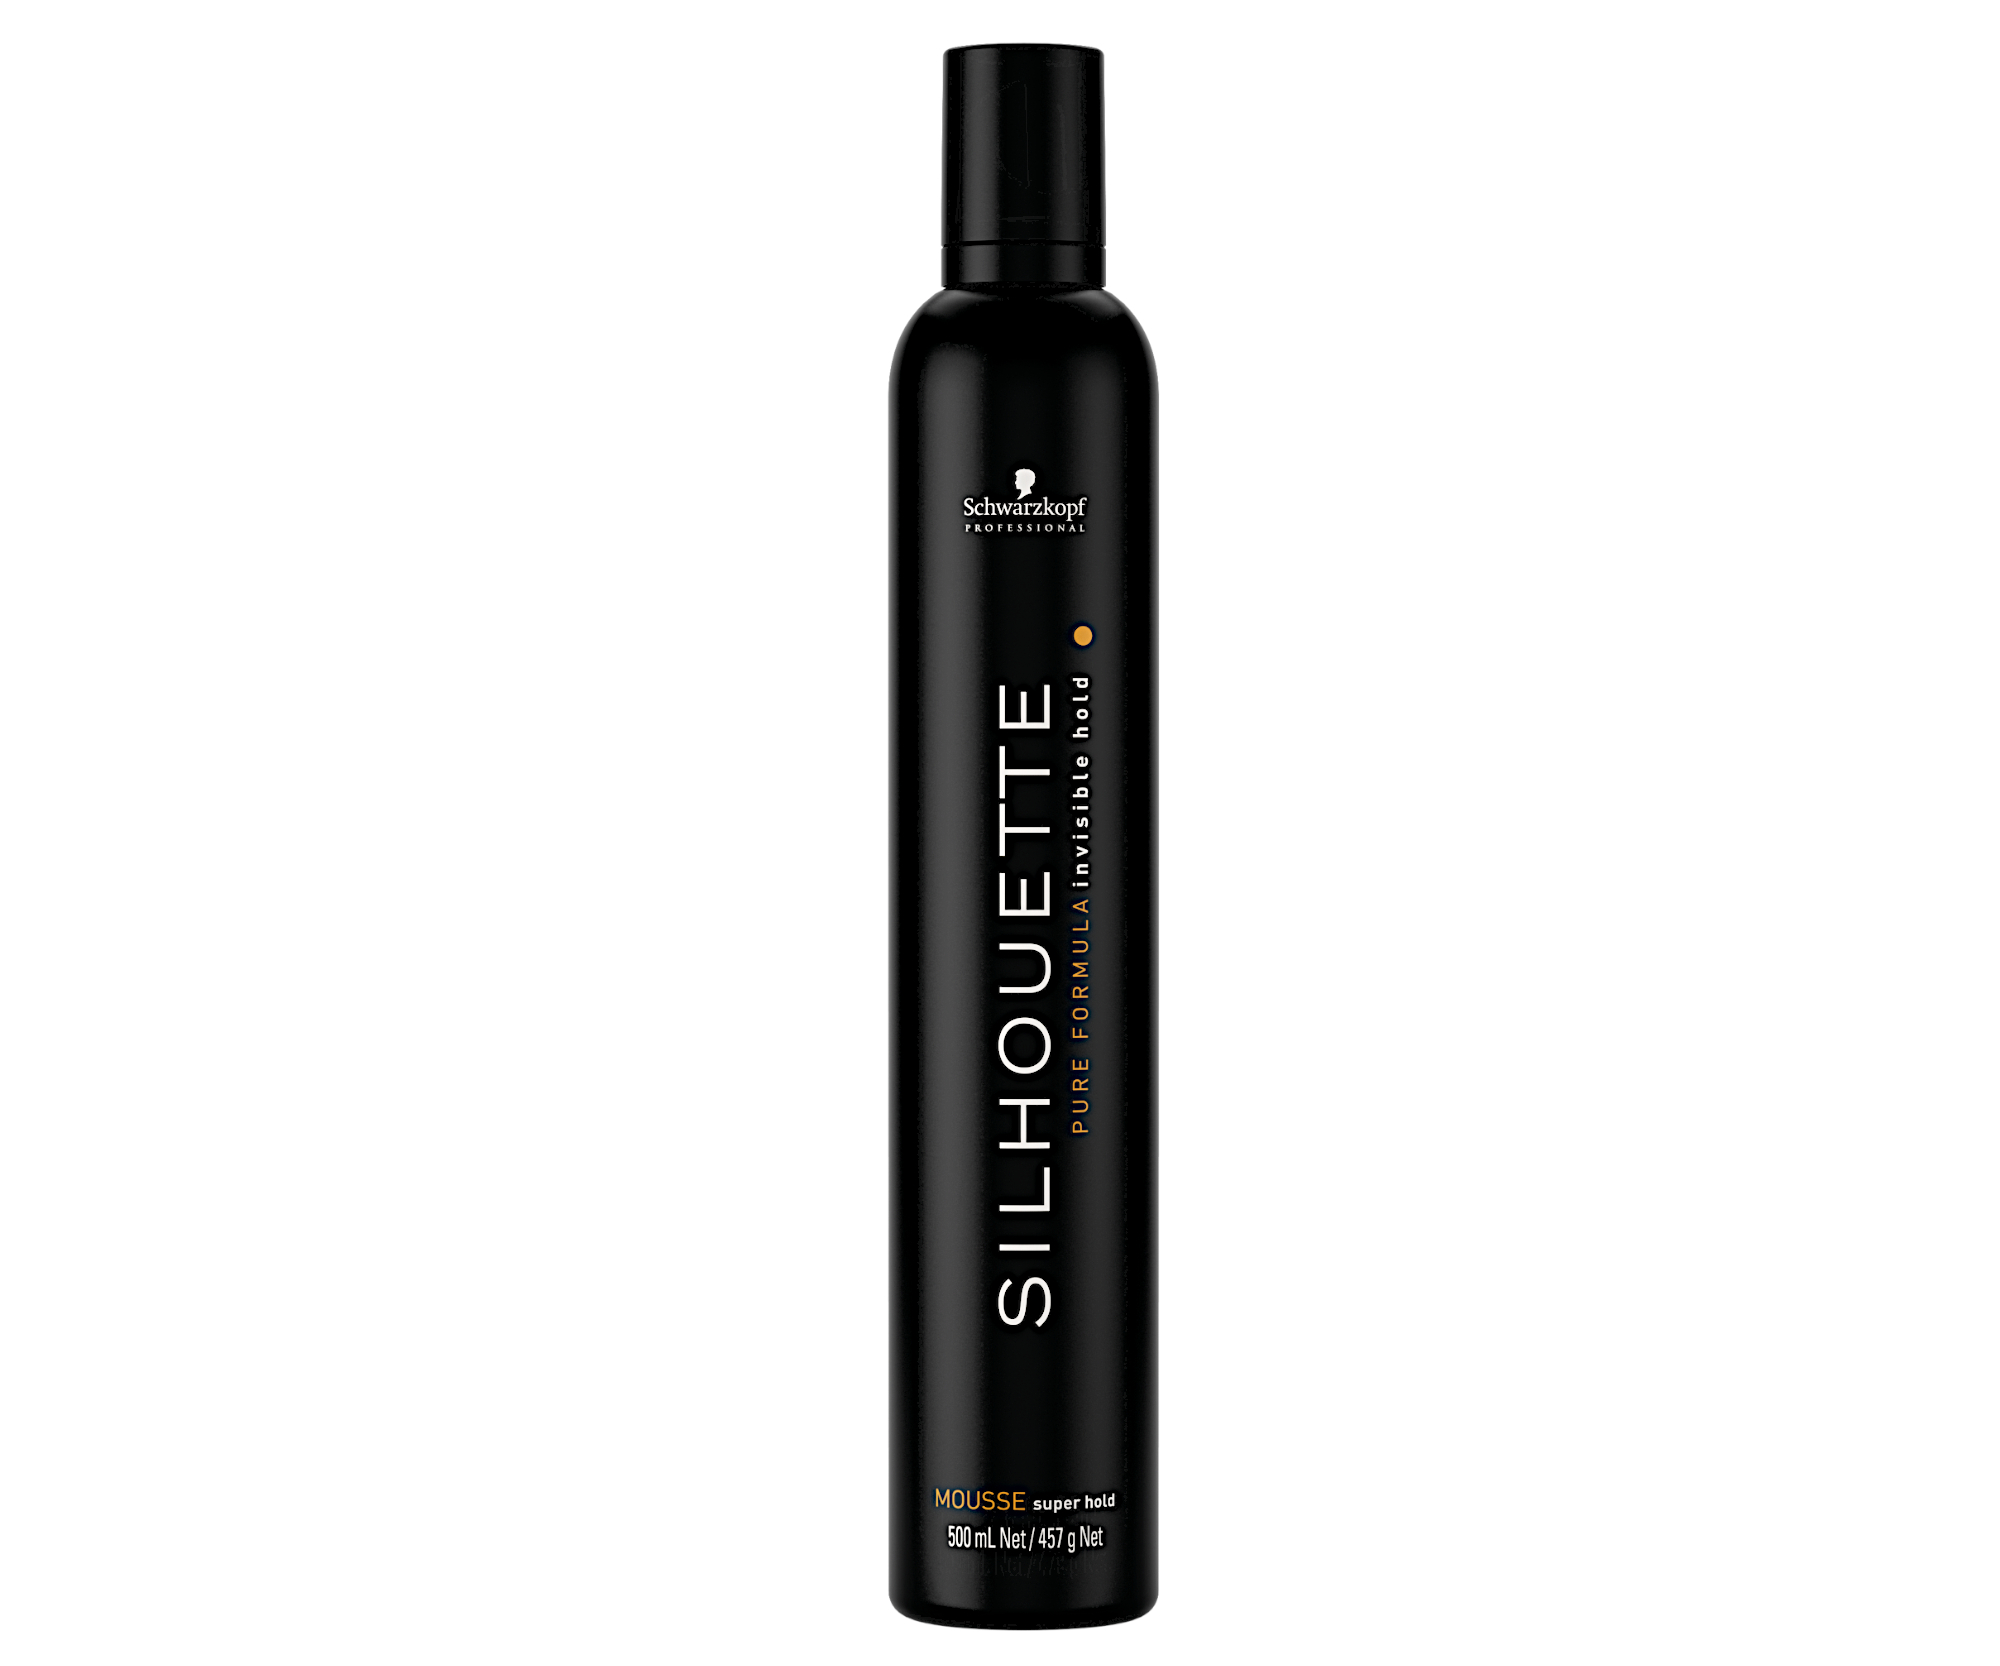 Pěna pro silnou fixaci vlasů Schwarzkopf Professional Silhouette Invisible Hold Mousse - 500 ml (2804902) + dárek zdarma